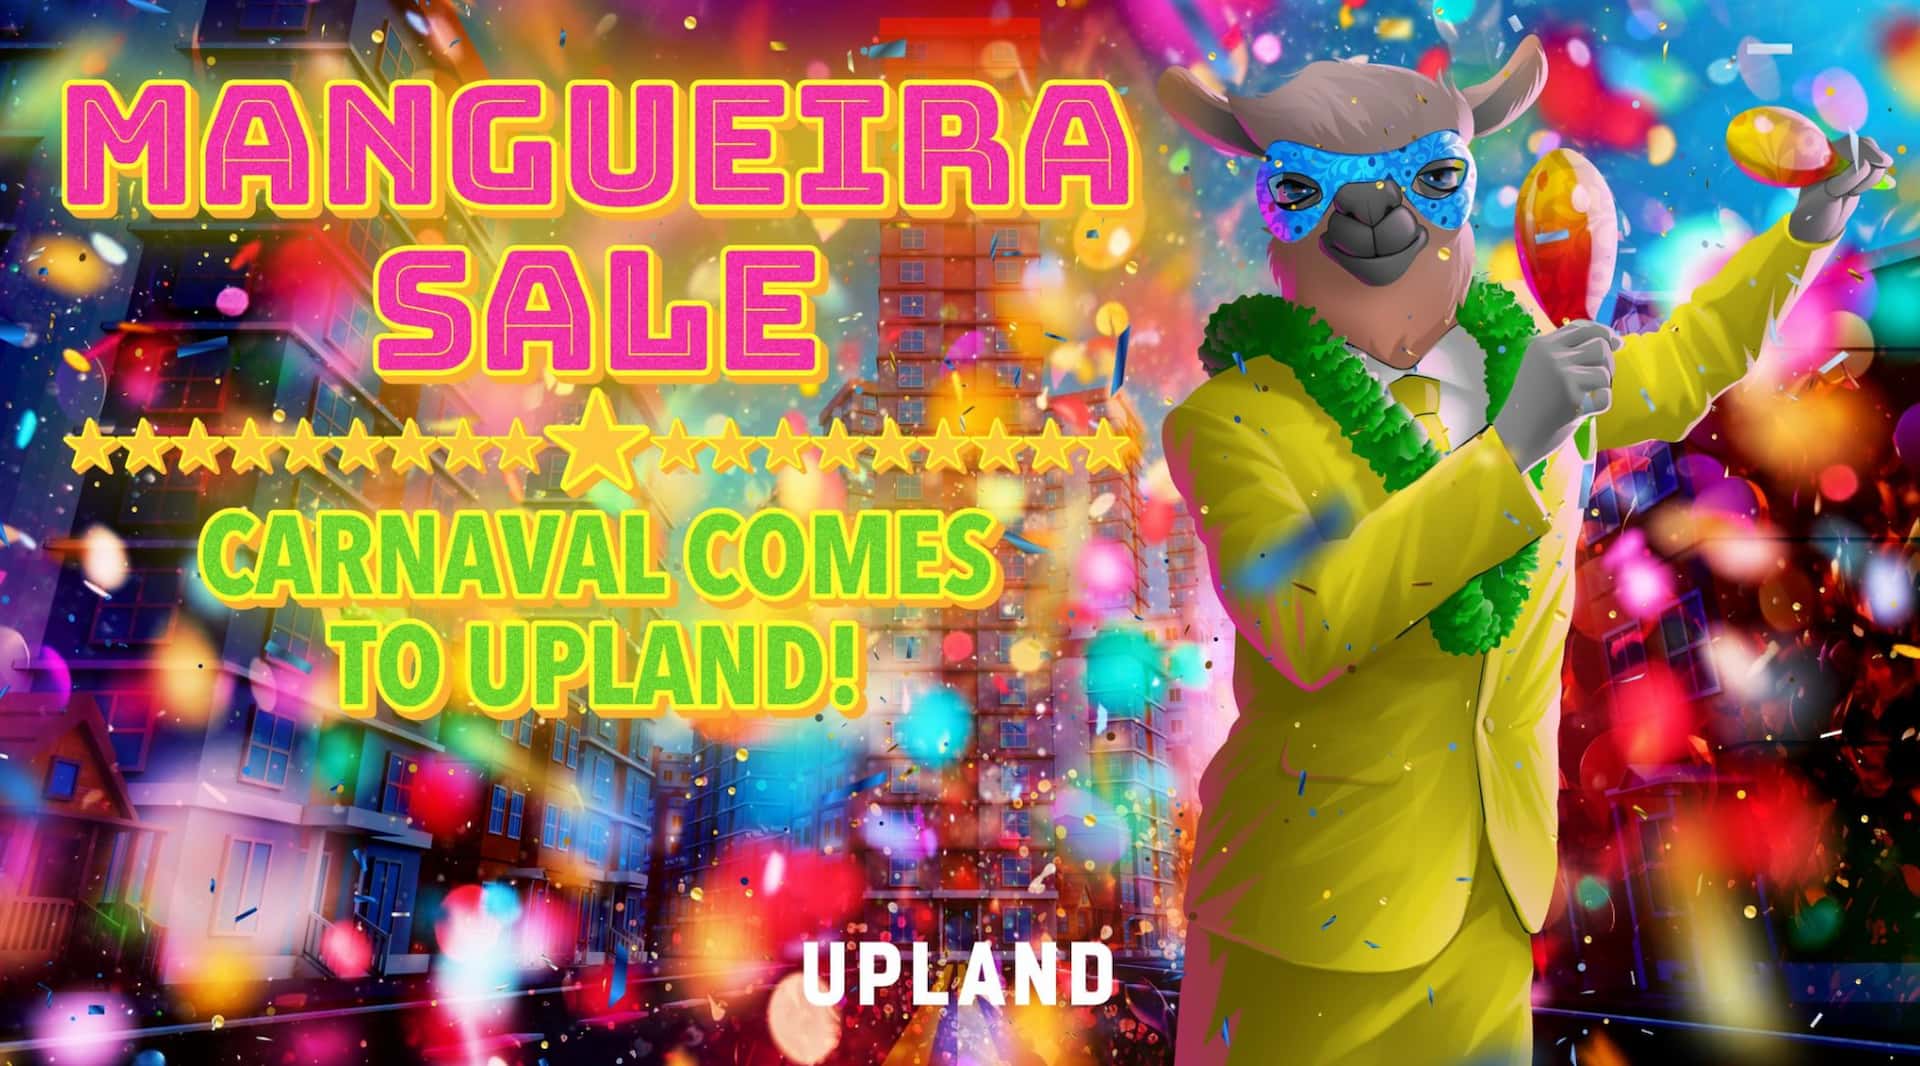 Imagem de anúncio do metaverso Upland, com a Lhama ícone da plataforma vestindo um terno amarelo e colar de pom-pom, para promover o Carnaval do metaverso